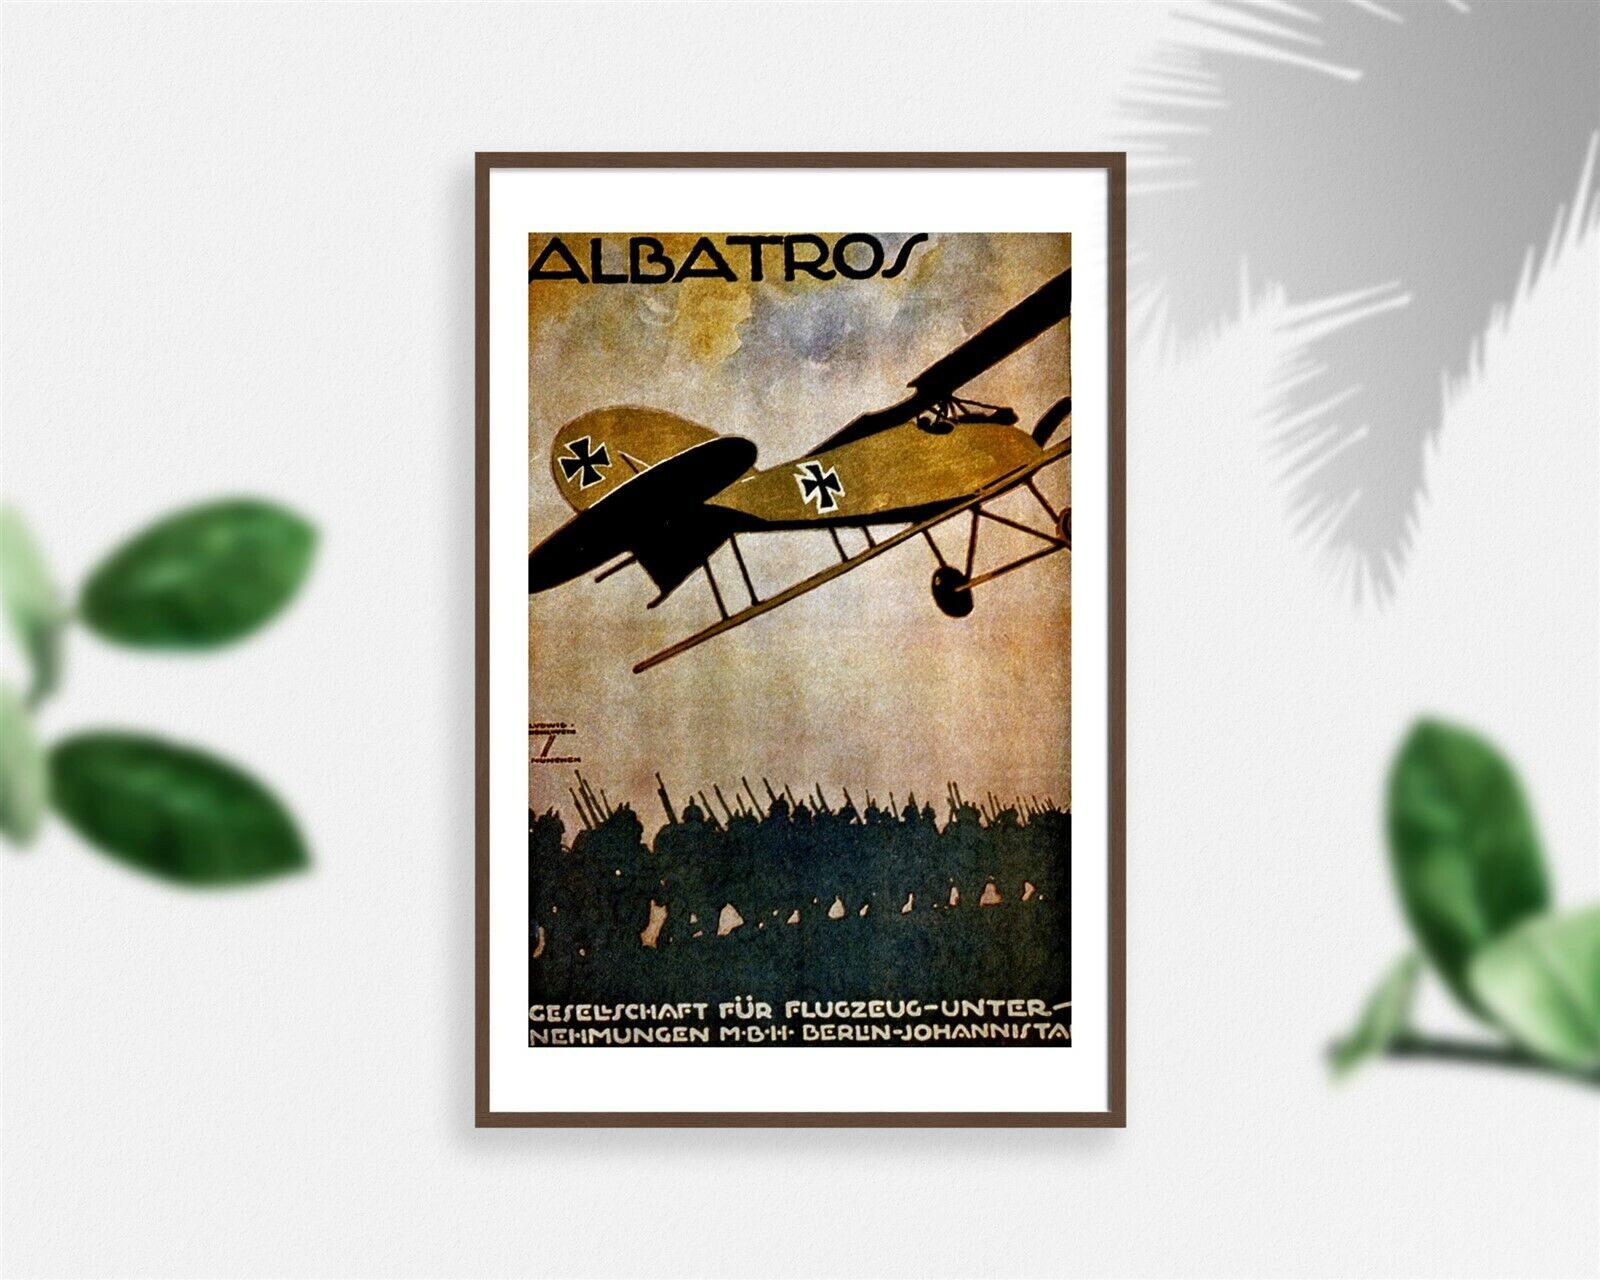 Photo: Albatros,Gesellschaft für Flugzeug,Unternehmungen M.B.H. Berlin,Johannist